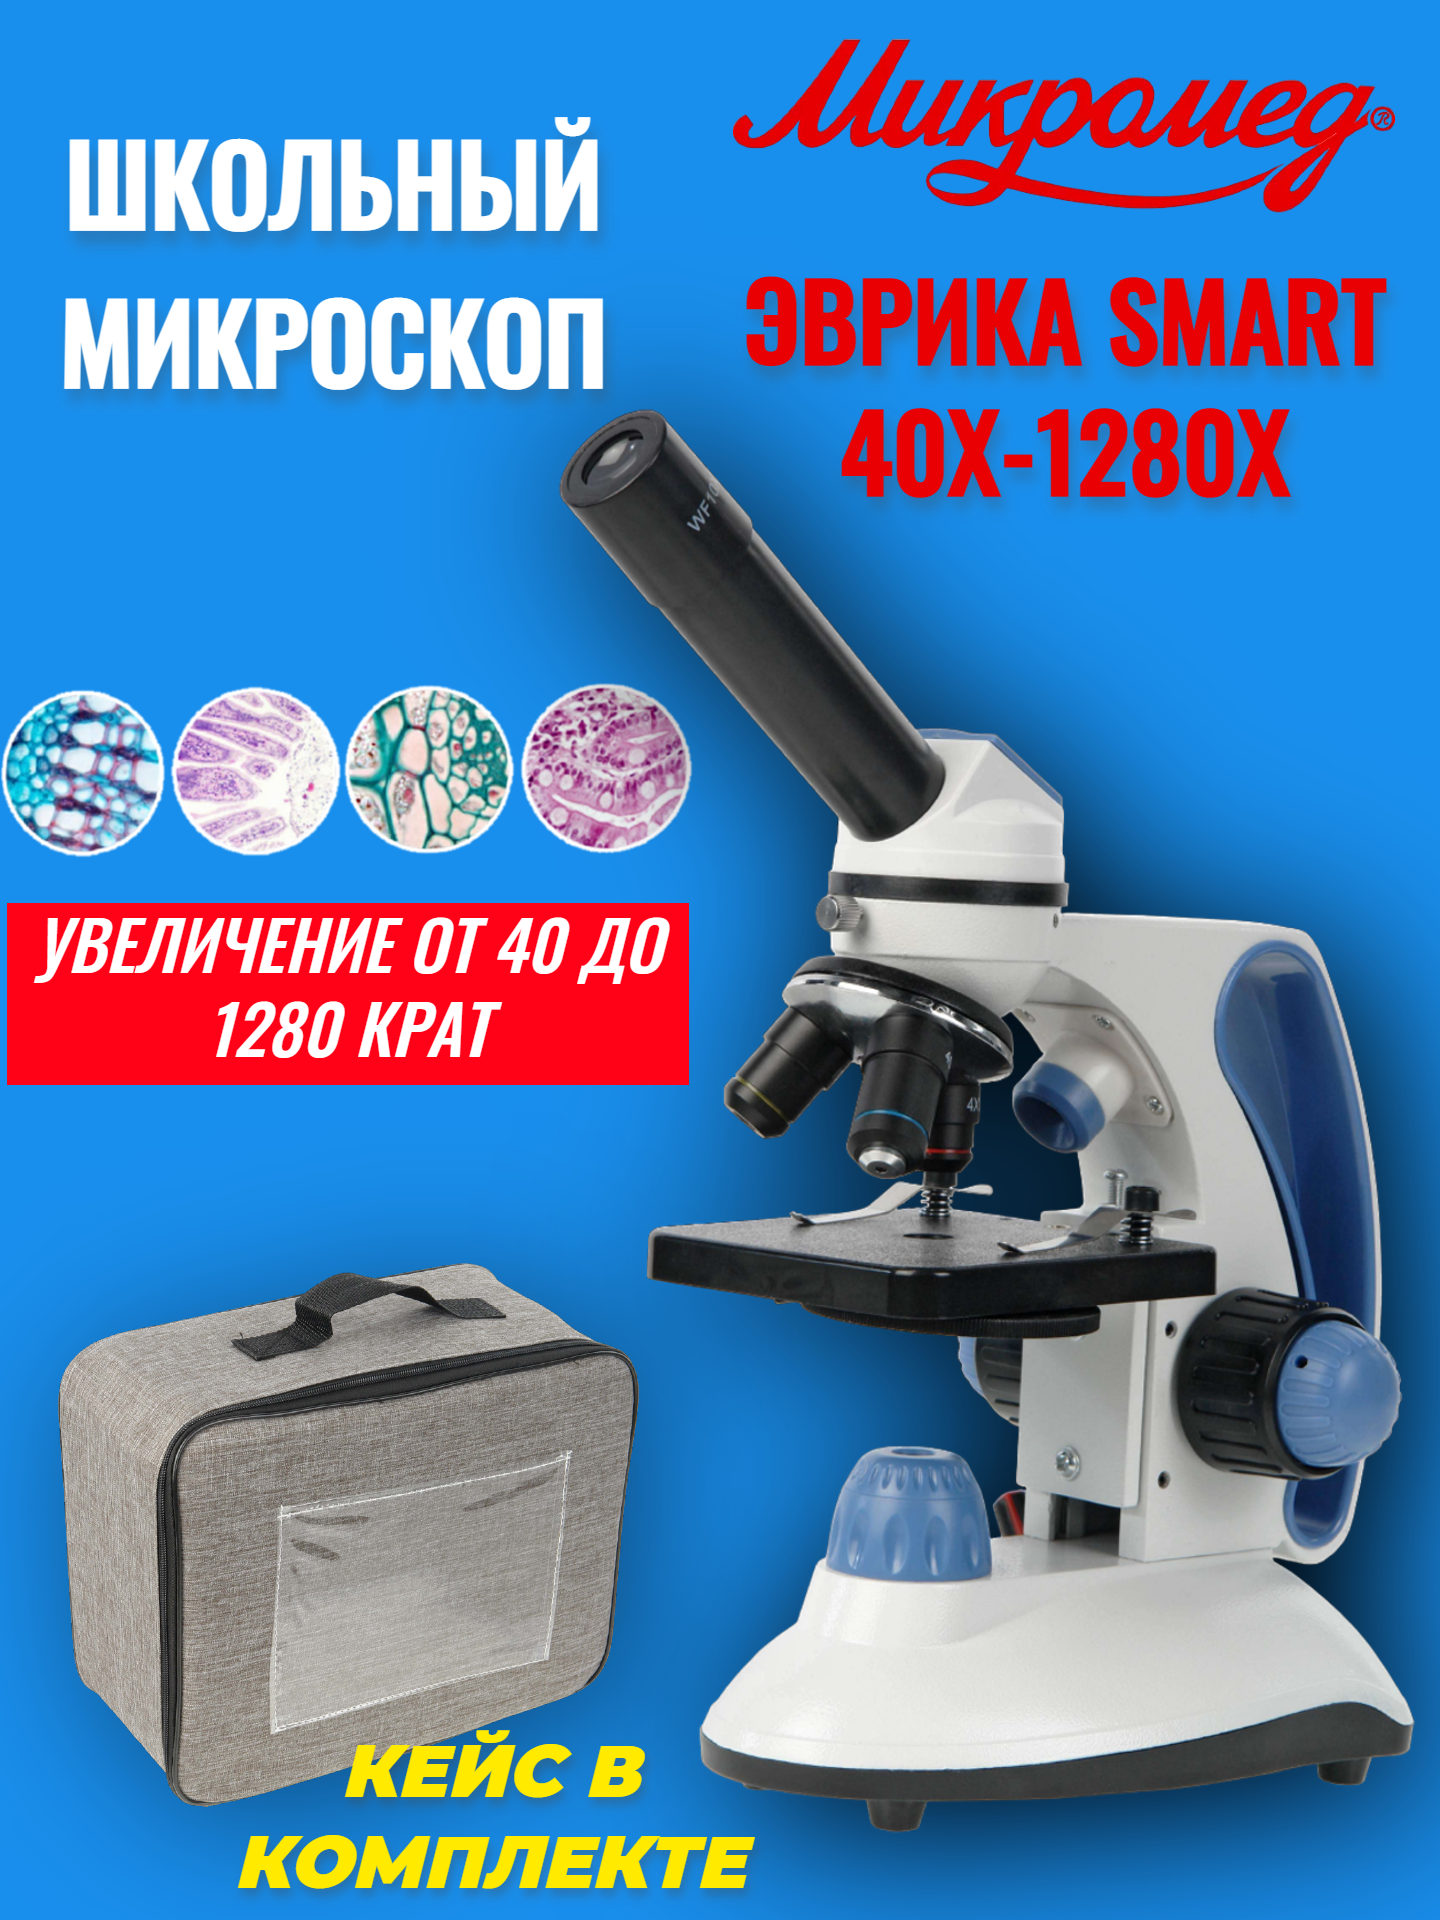 Микроскоп школьный учебный Микромед Эврика SMART 40х-1280х в текстильном кейсе микроскоп школьный микромед эврика 40х 400х в кейсе лайм